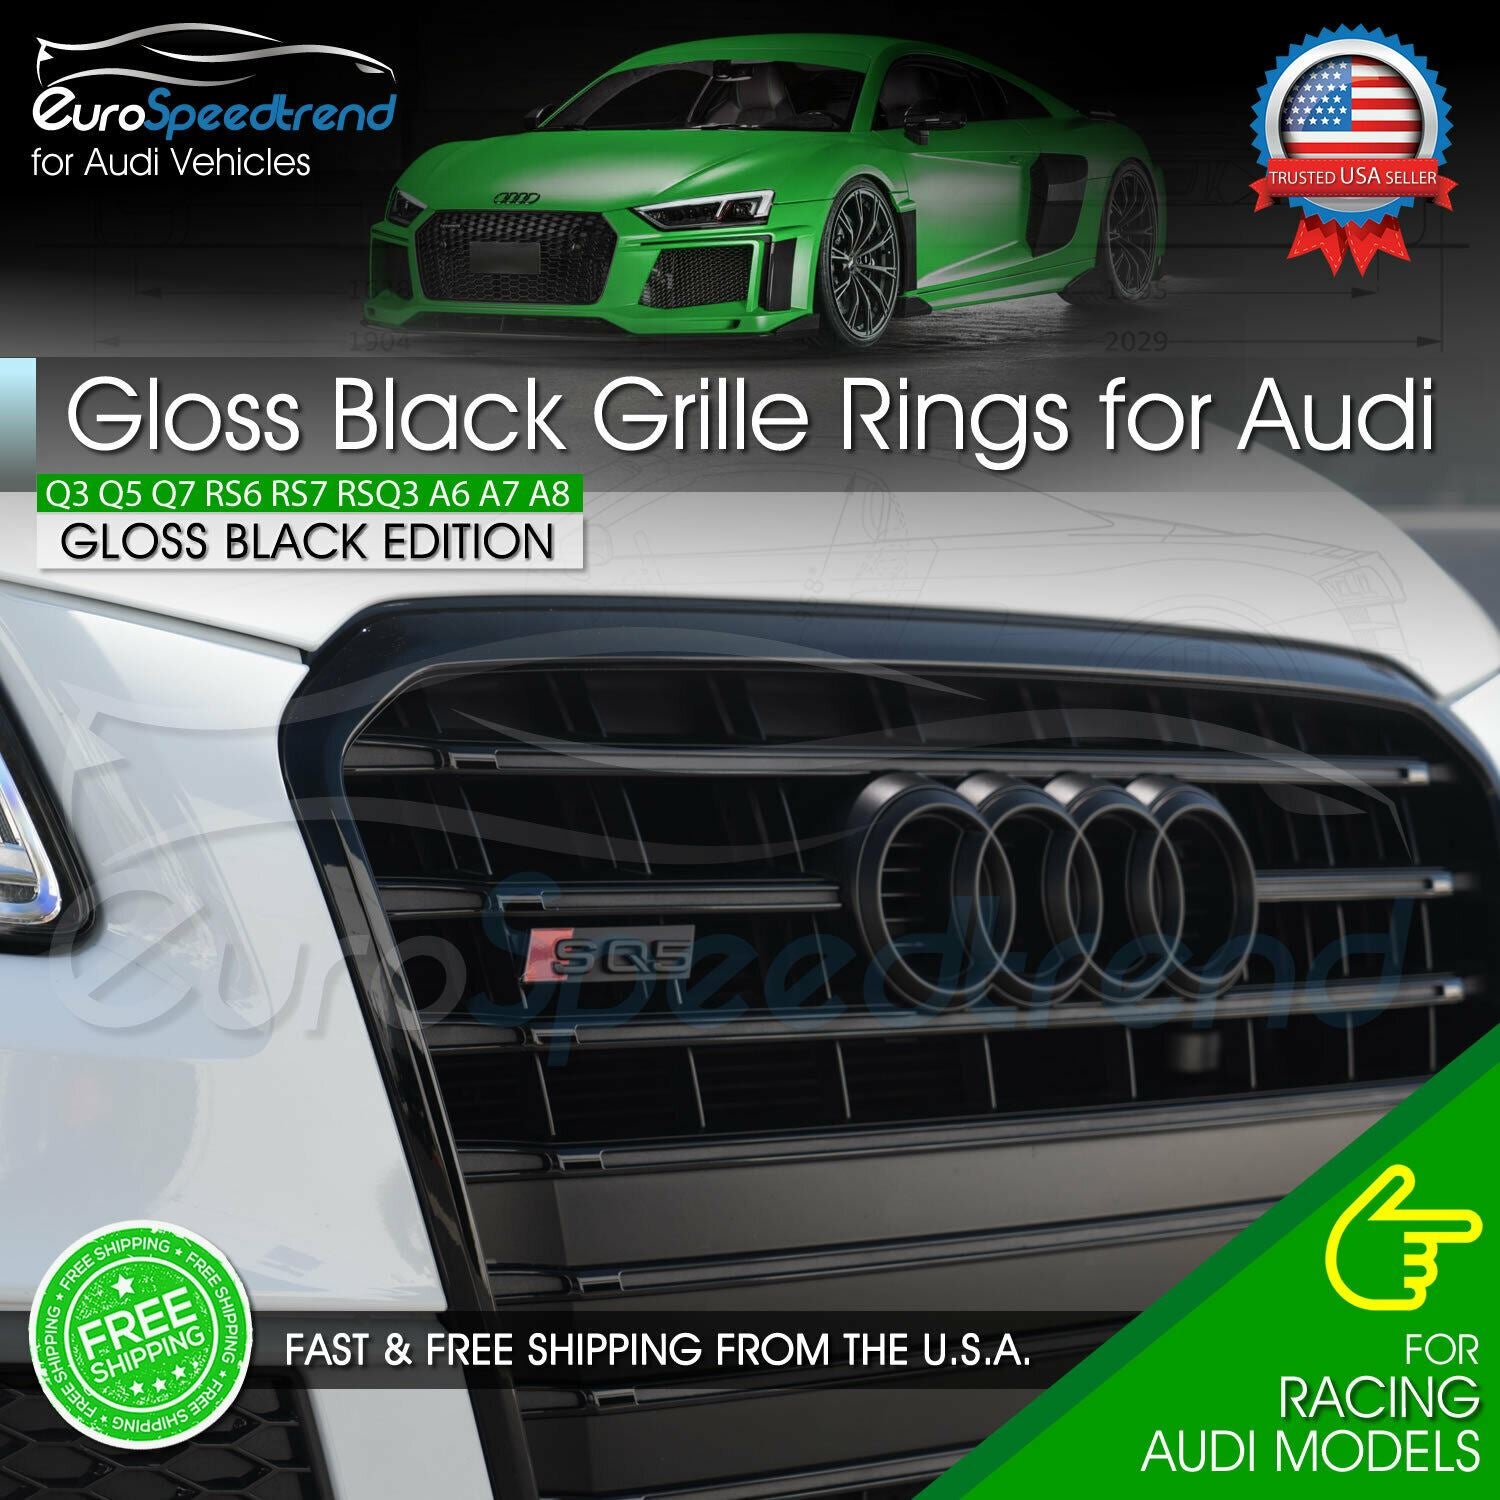 Audi Emblem / Ringe schwarz glänzend für Gepäckraumklappe Audi Q5 / SQ5 FY, AUDI Q5 / SQ5 FY ab 2017, Audi Q5 / SQ5, Audi Embleme schwarz, Audi